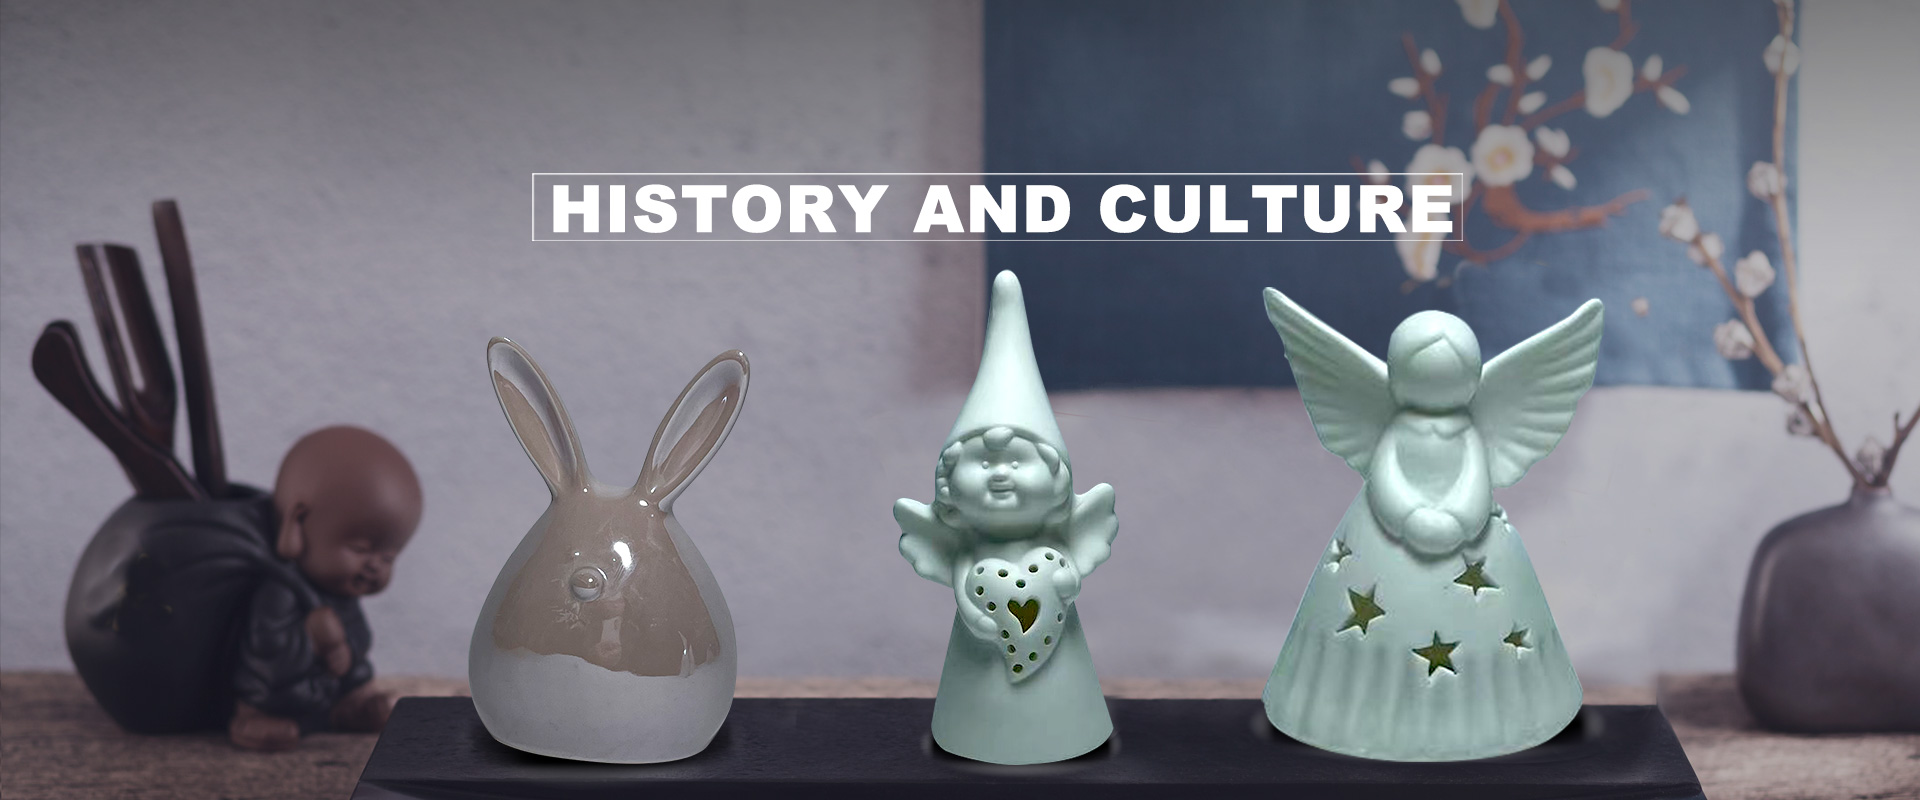 histórie a kultúry